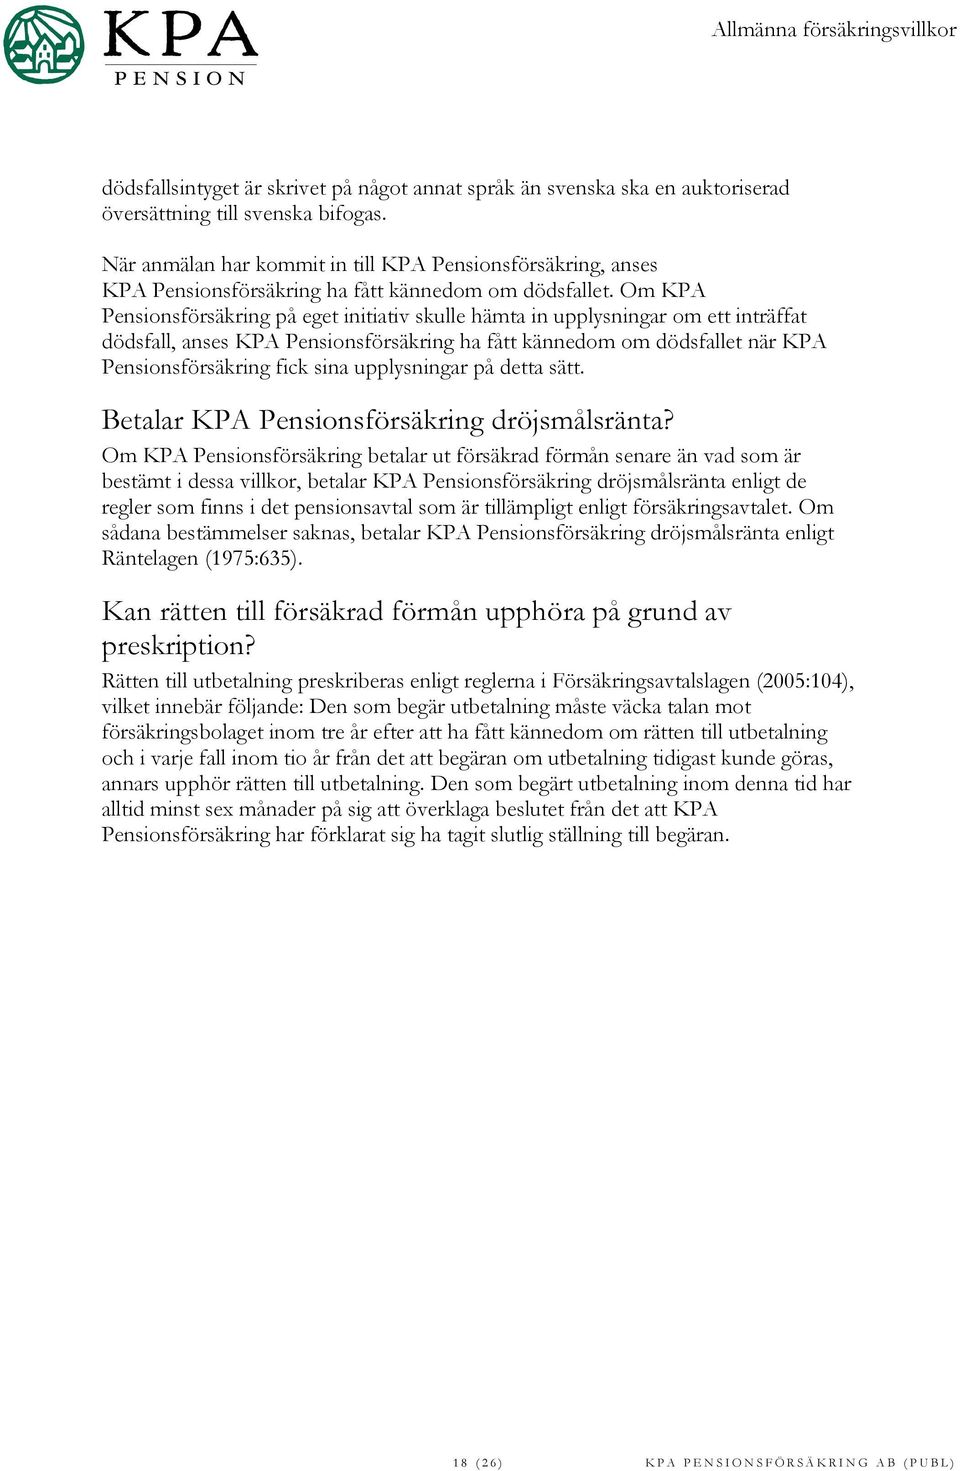 Om KPA Pensionsförsäkring på eget initiativ skulle hämta in upplysningar om ett inträffat dödsfall, anses KPA Pensionsförsäkring ha fått kännedom om dödsfallet när KPA Pensionsförsäkring fick sina